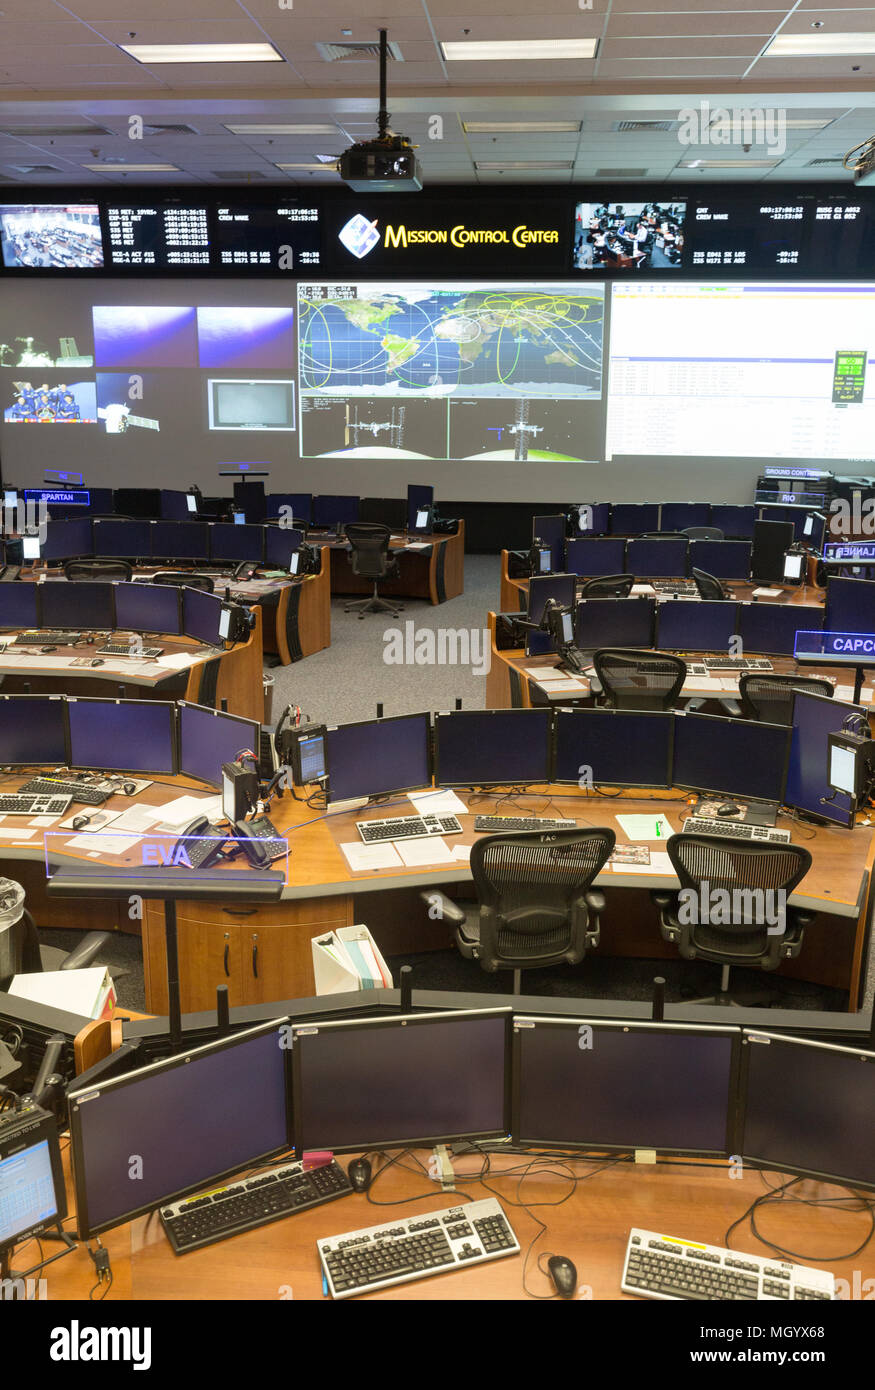 Mission Control Center, NASA Johnson Space Center, Houston, Texas USA Stock Photo